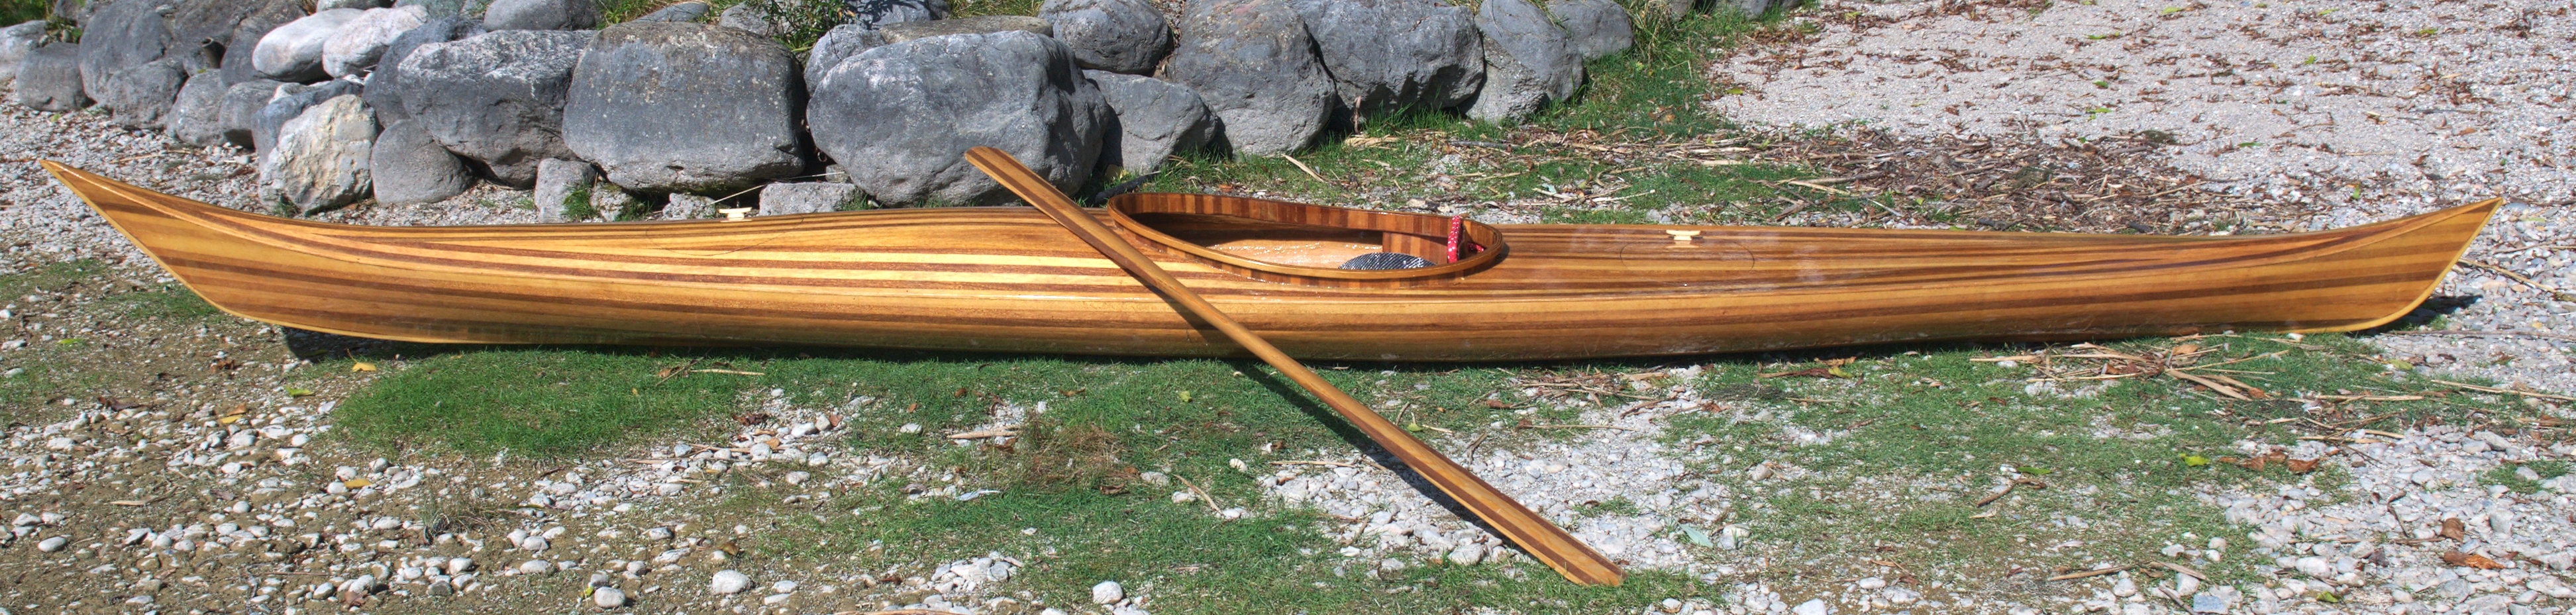 kayak kayak sail plans wooden kayak plans free wood strip kayak plans 